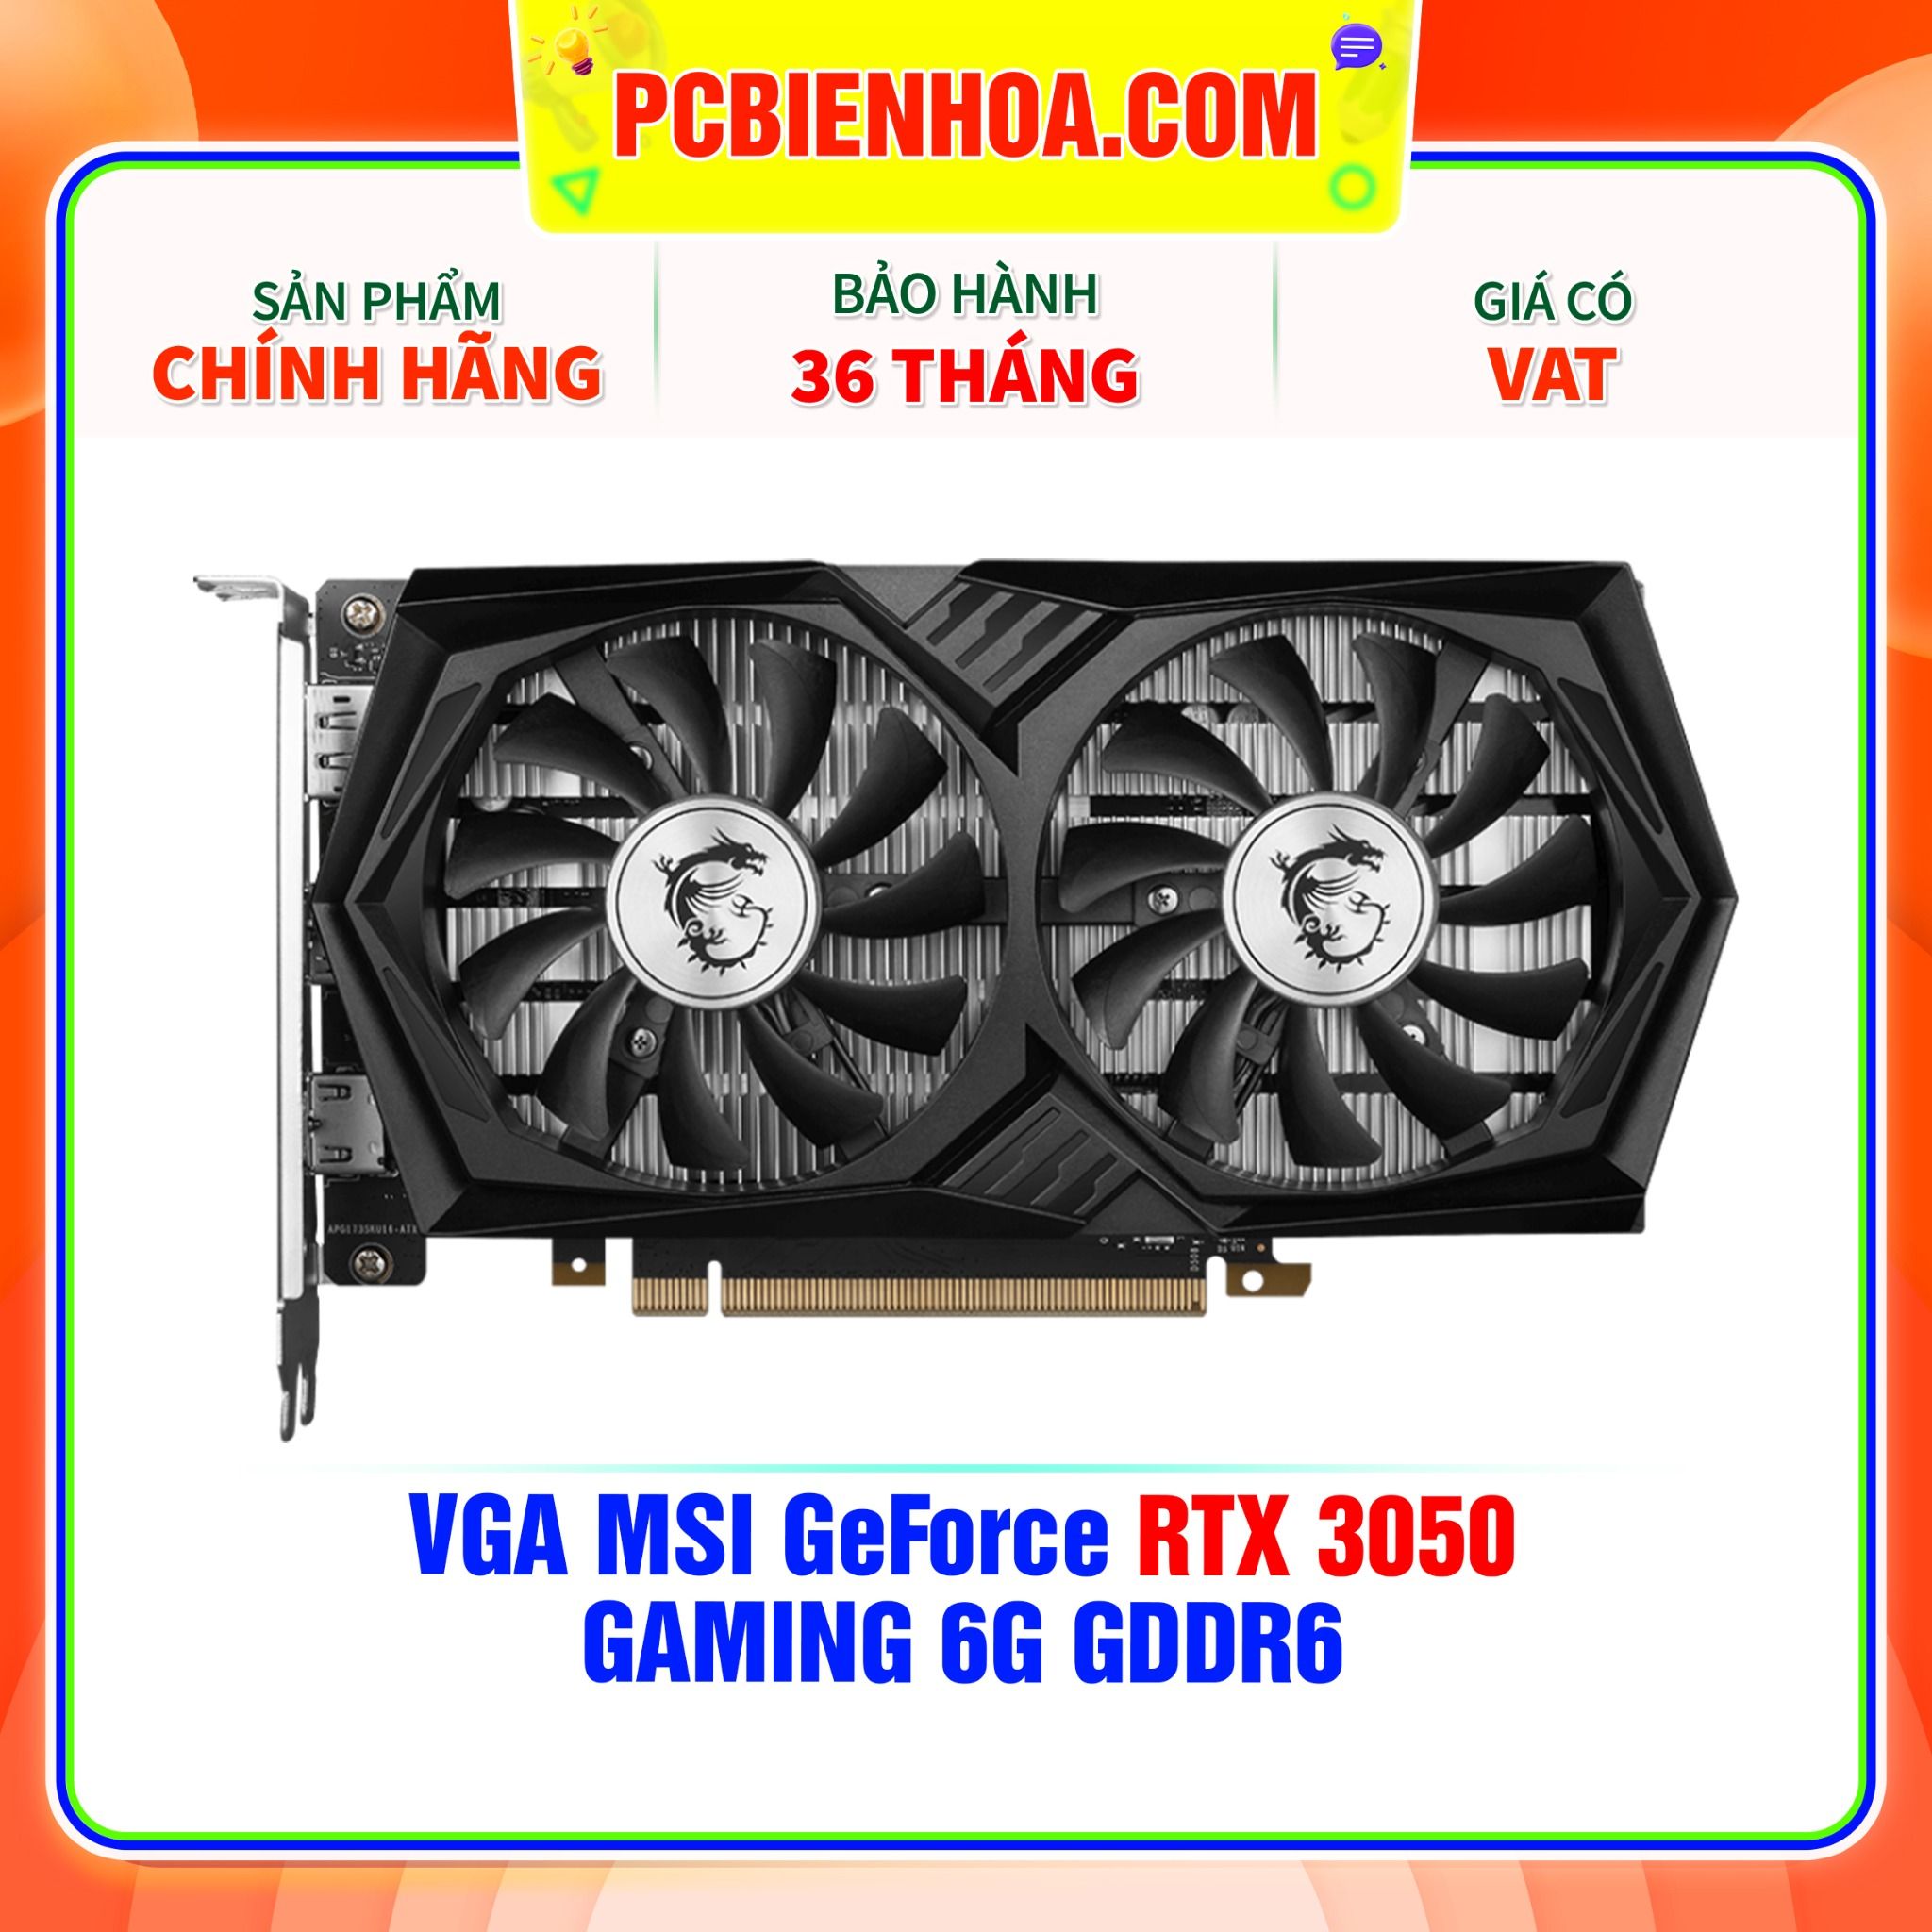  VGA MSI GeForce RTX 3050 GAMING 6G GDDR6 